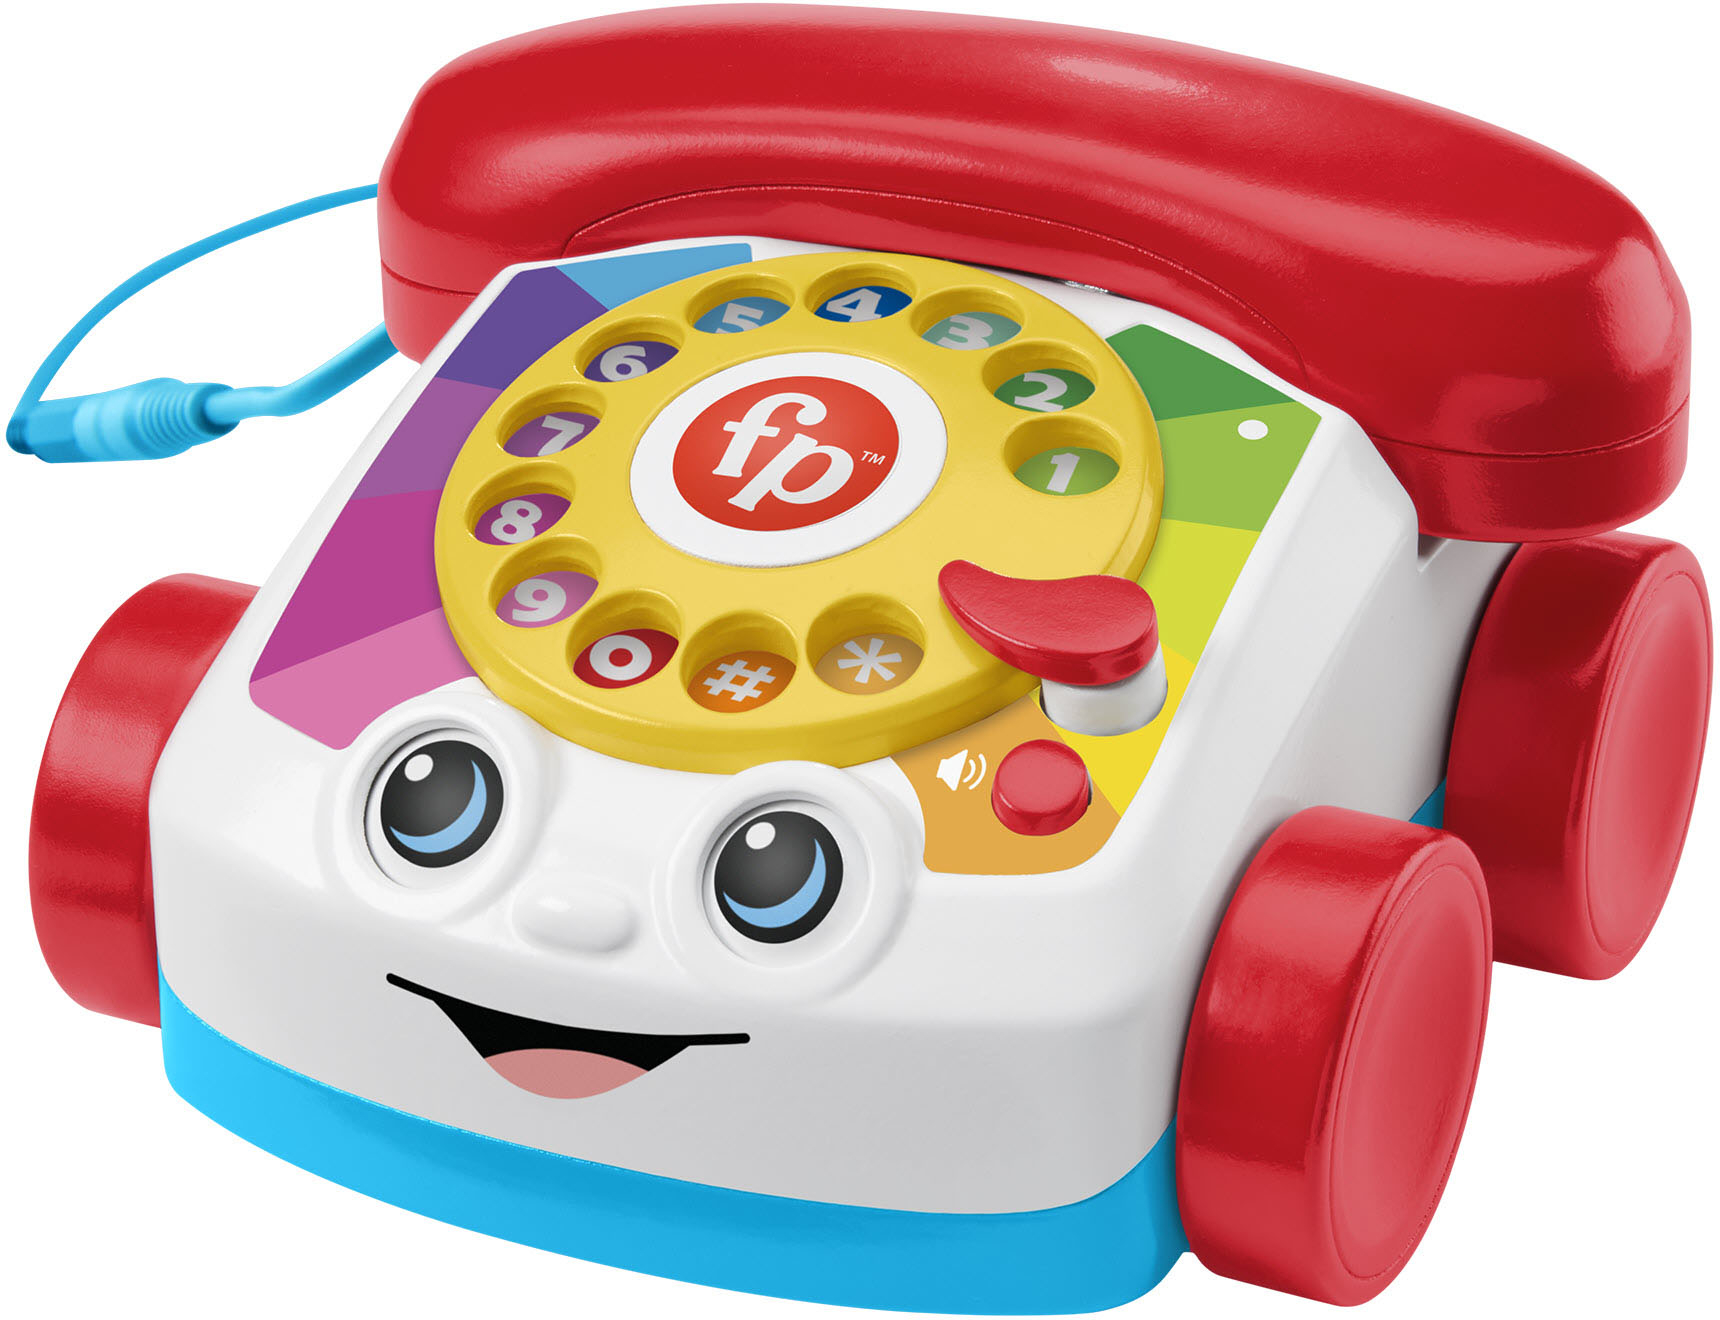 Leuren Woud noodsituatie Fisher-Price Chatter Telephone with Bluetooth HGJ69 - Best Buy